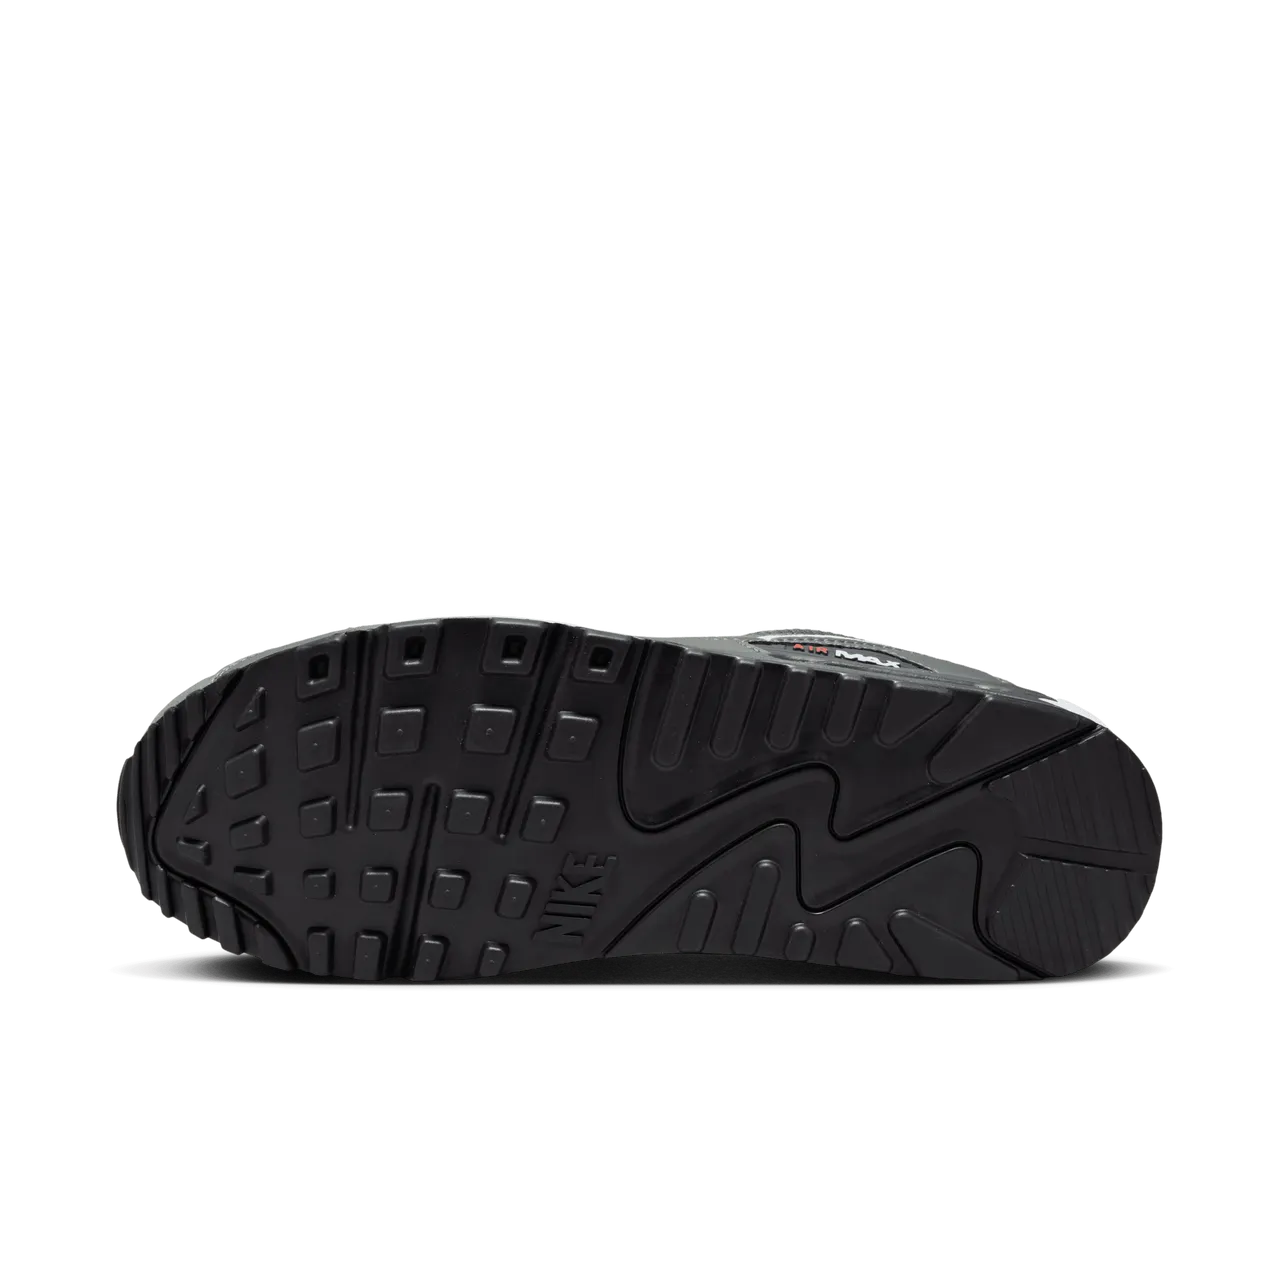 Nike Air Max 90 Men's Shoes - Grey